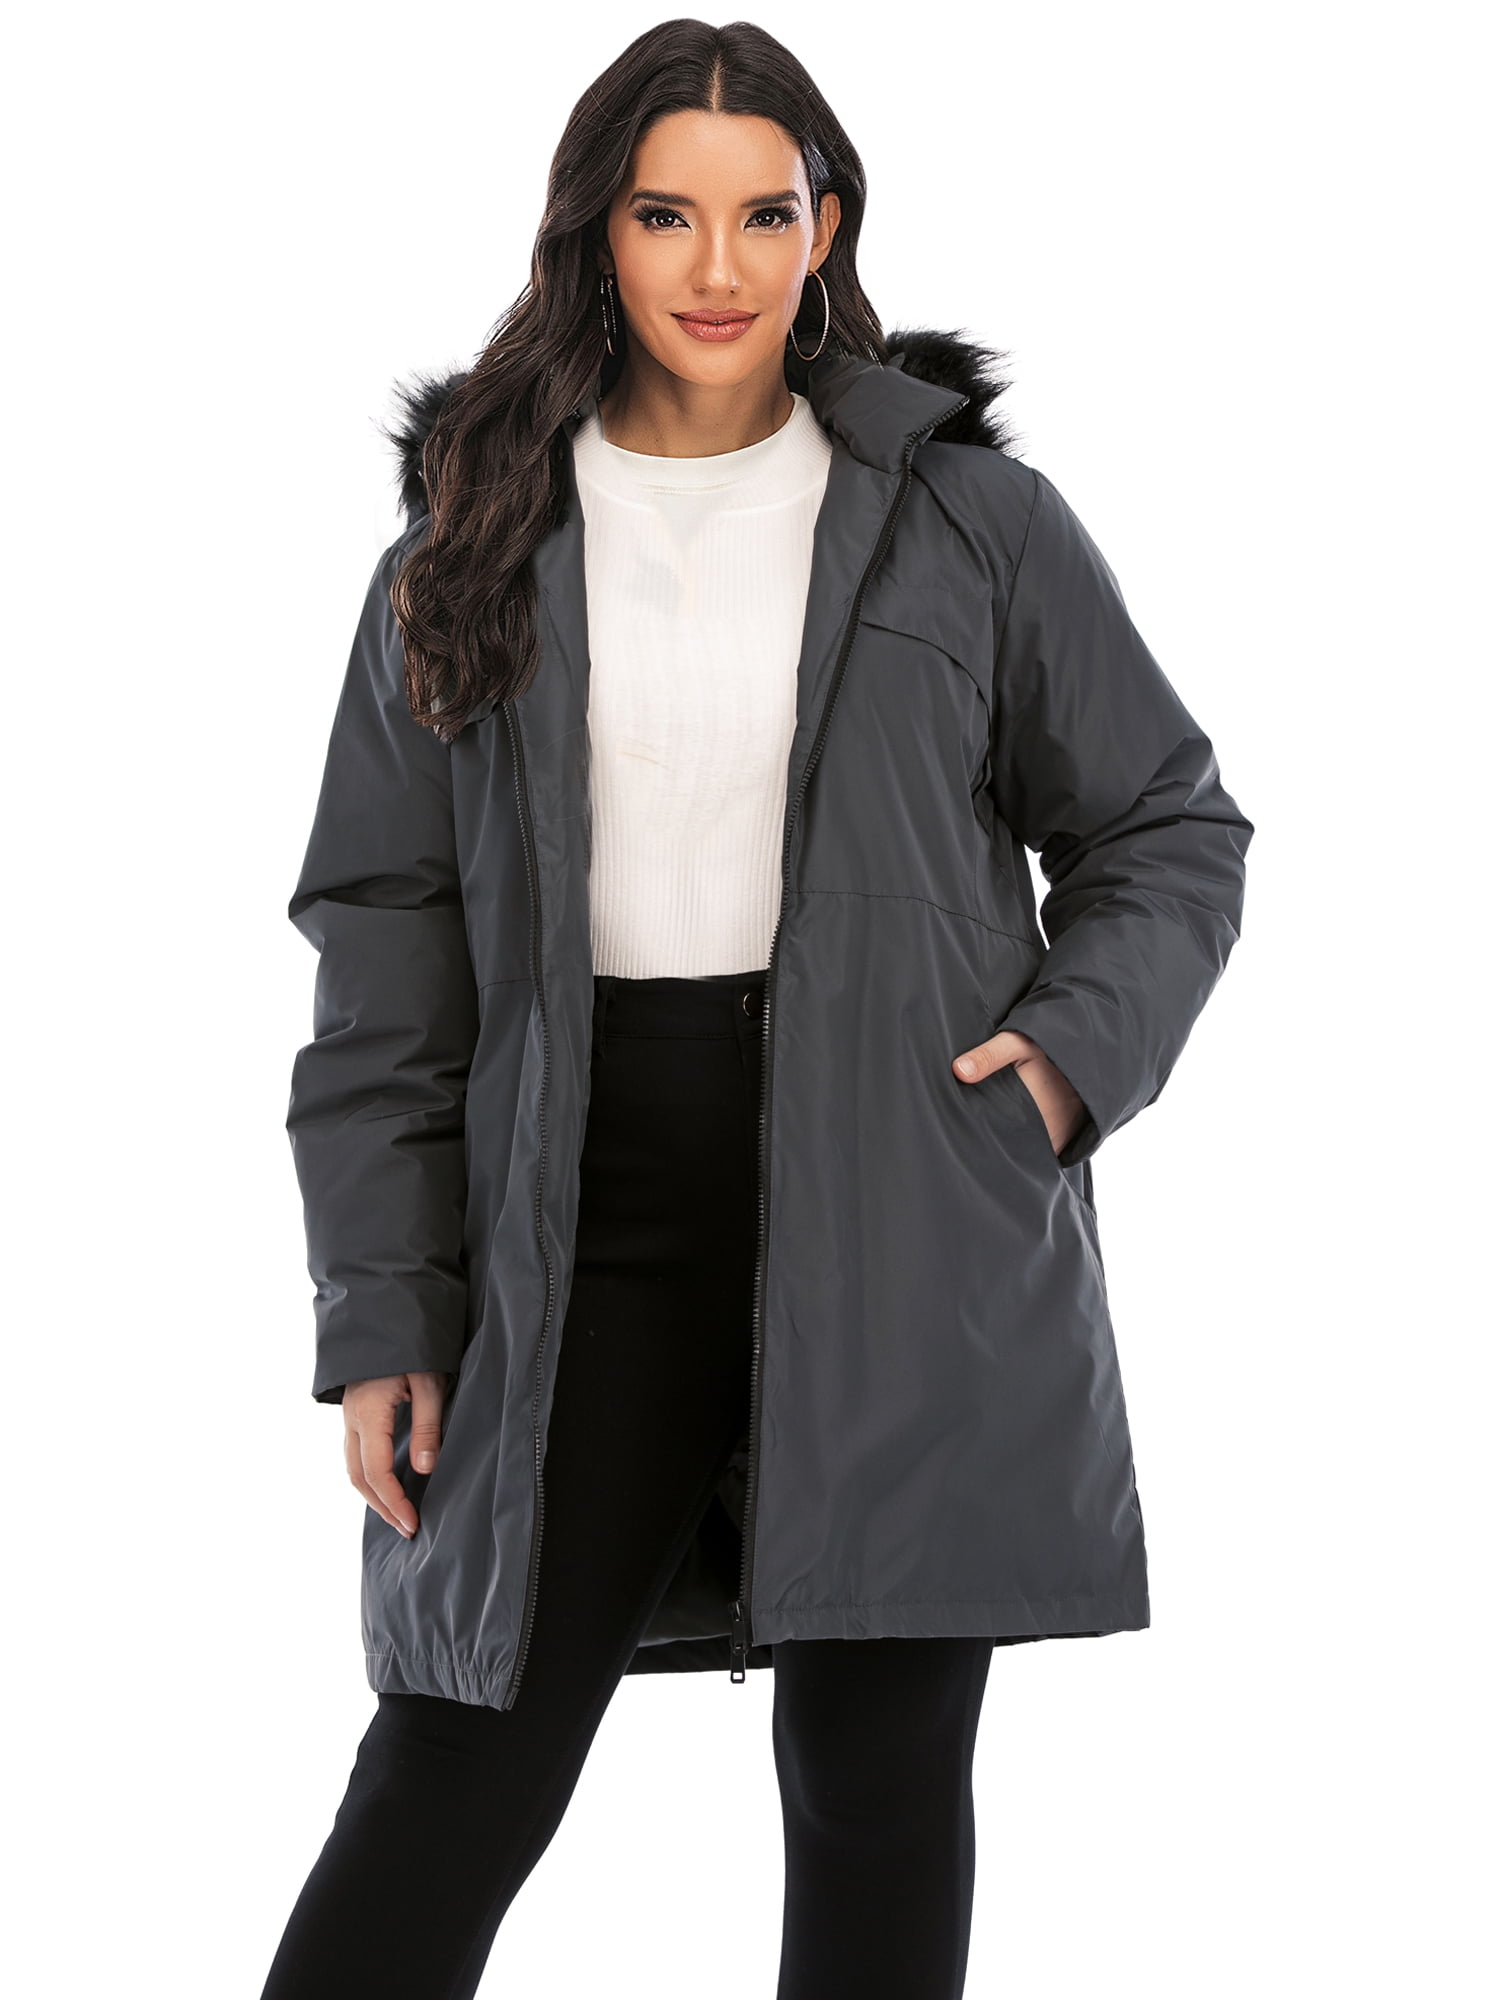 Plus Size Womens Raincoat Hoodie Coat Jacket Ladies Zip Up Hoody Casual Outwear 